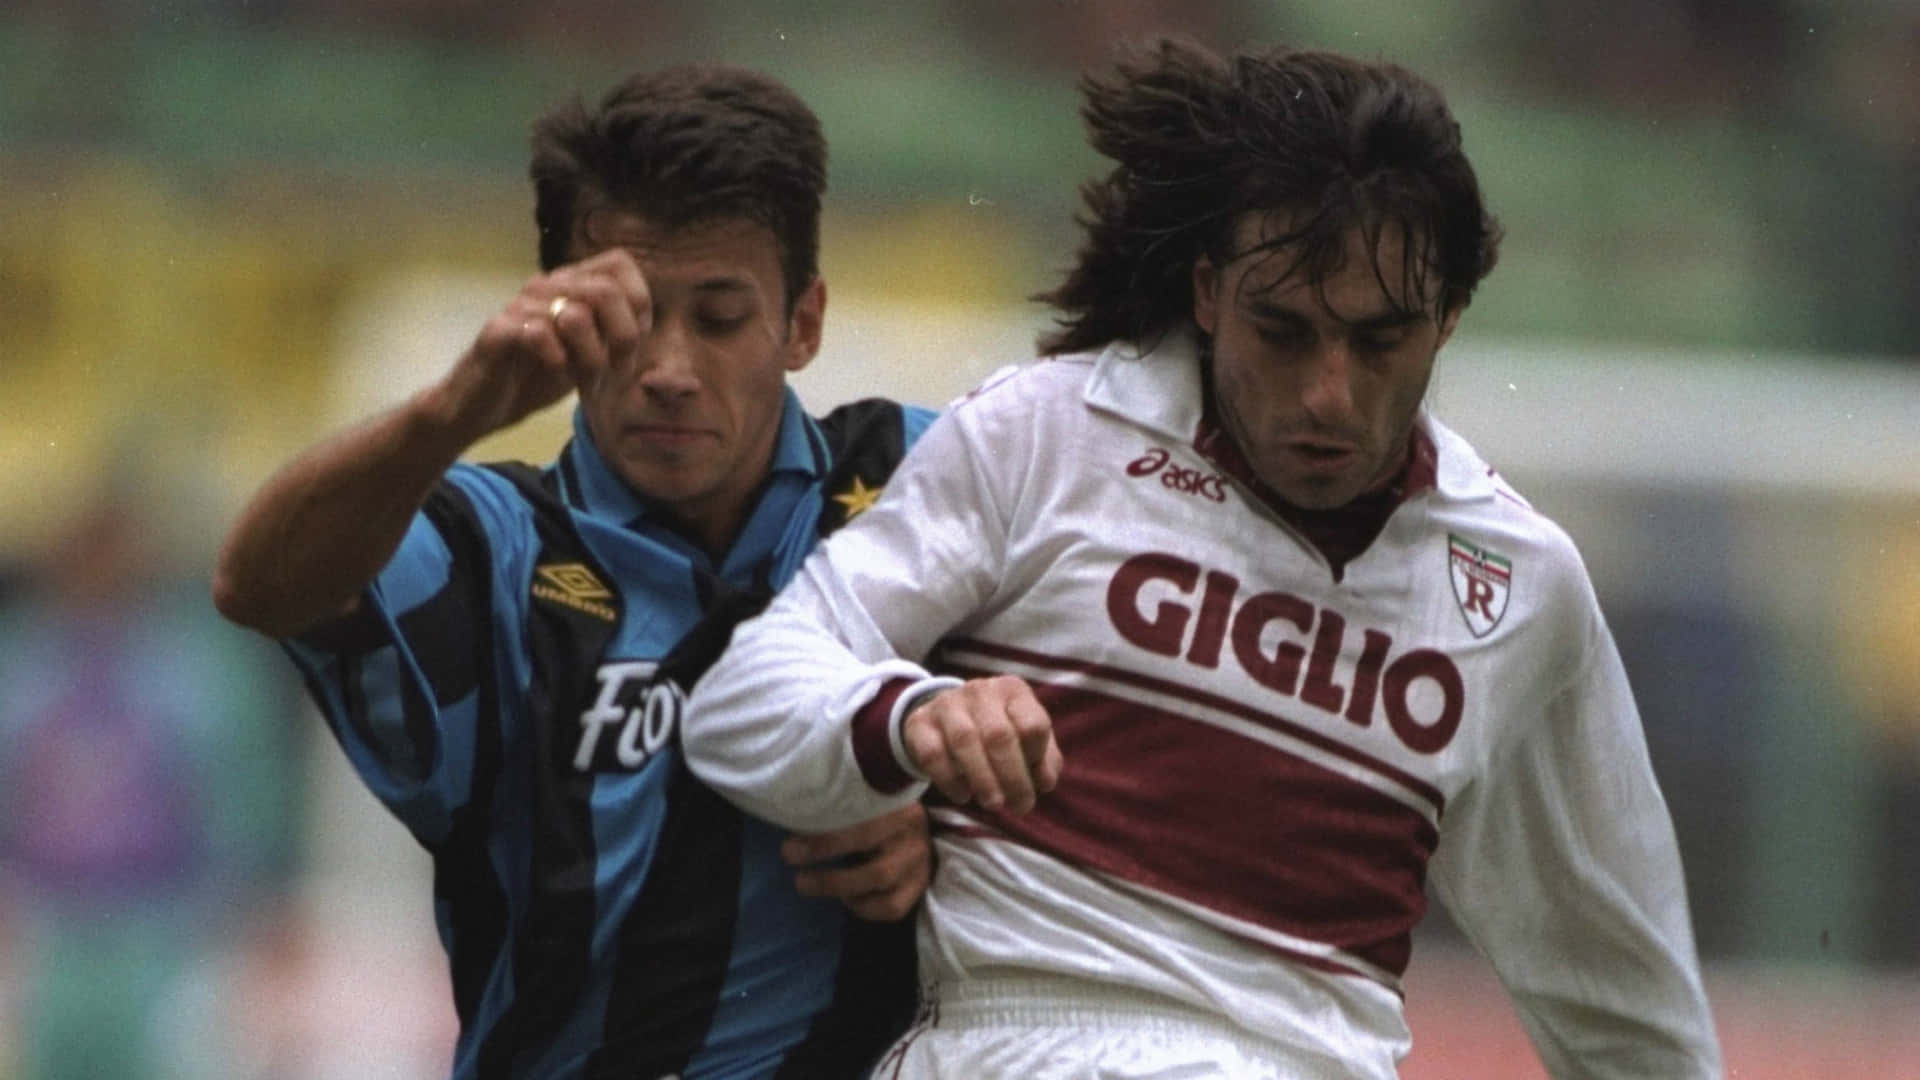 Paulo Futre And Antonio Paganin Serie A League Wallpaper